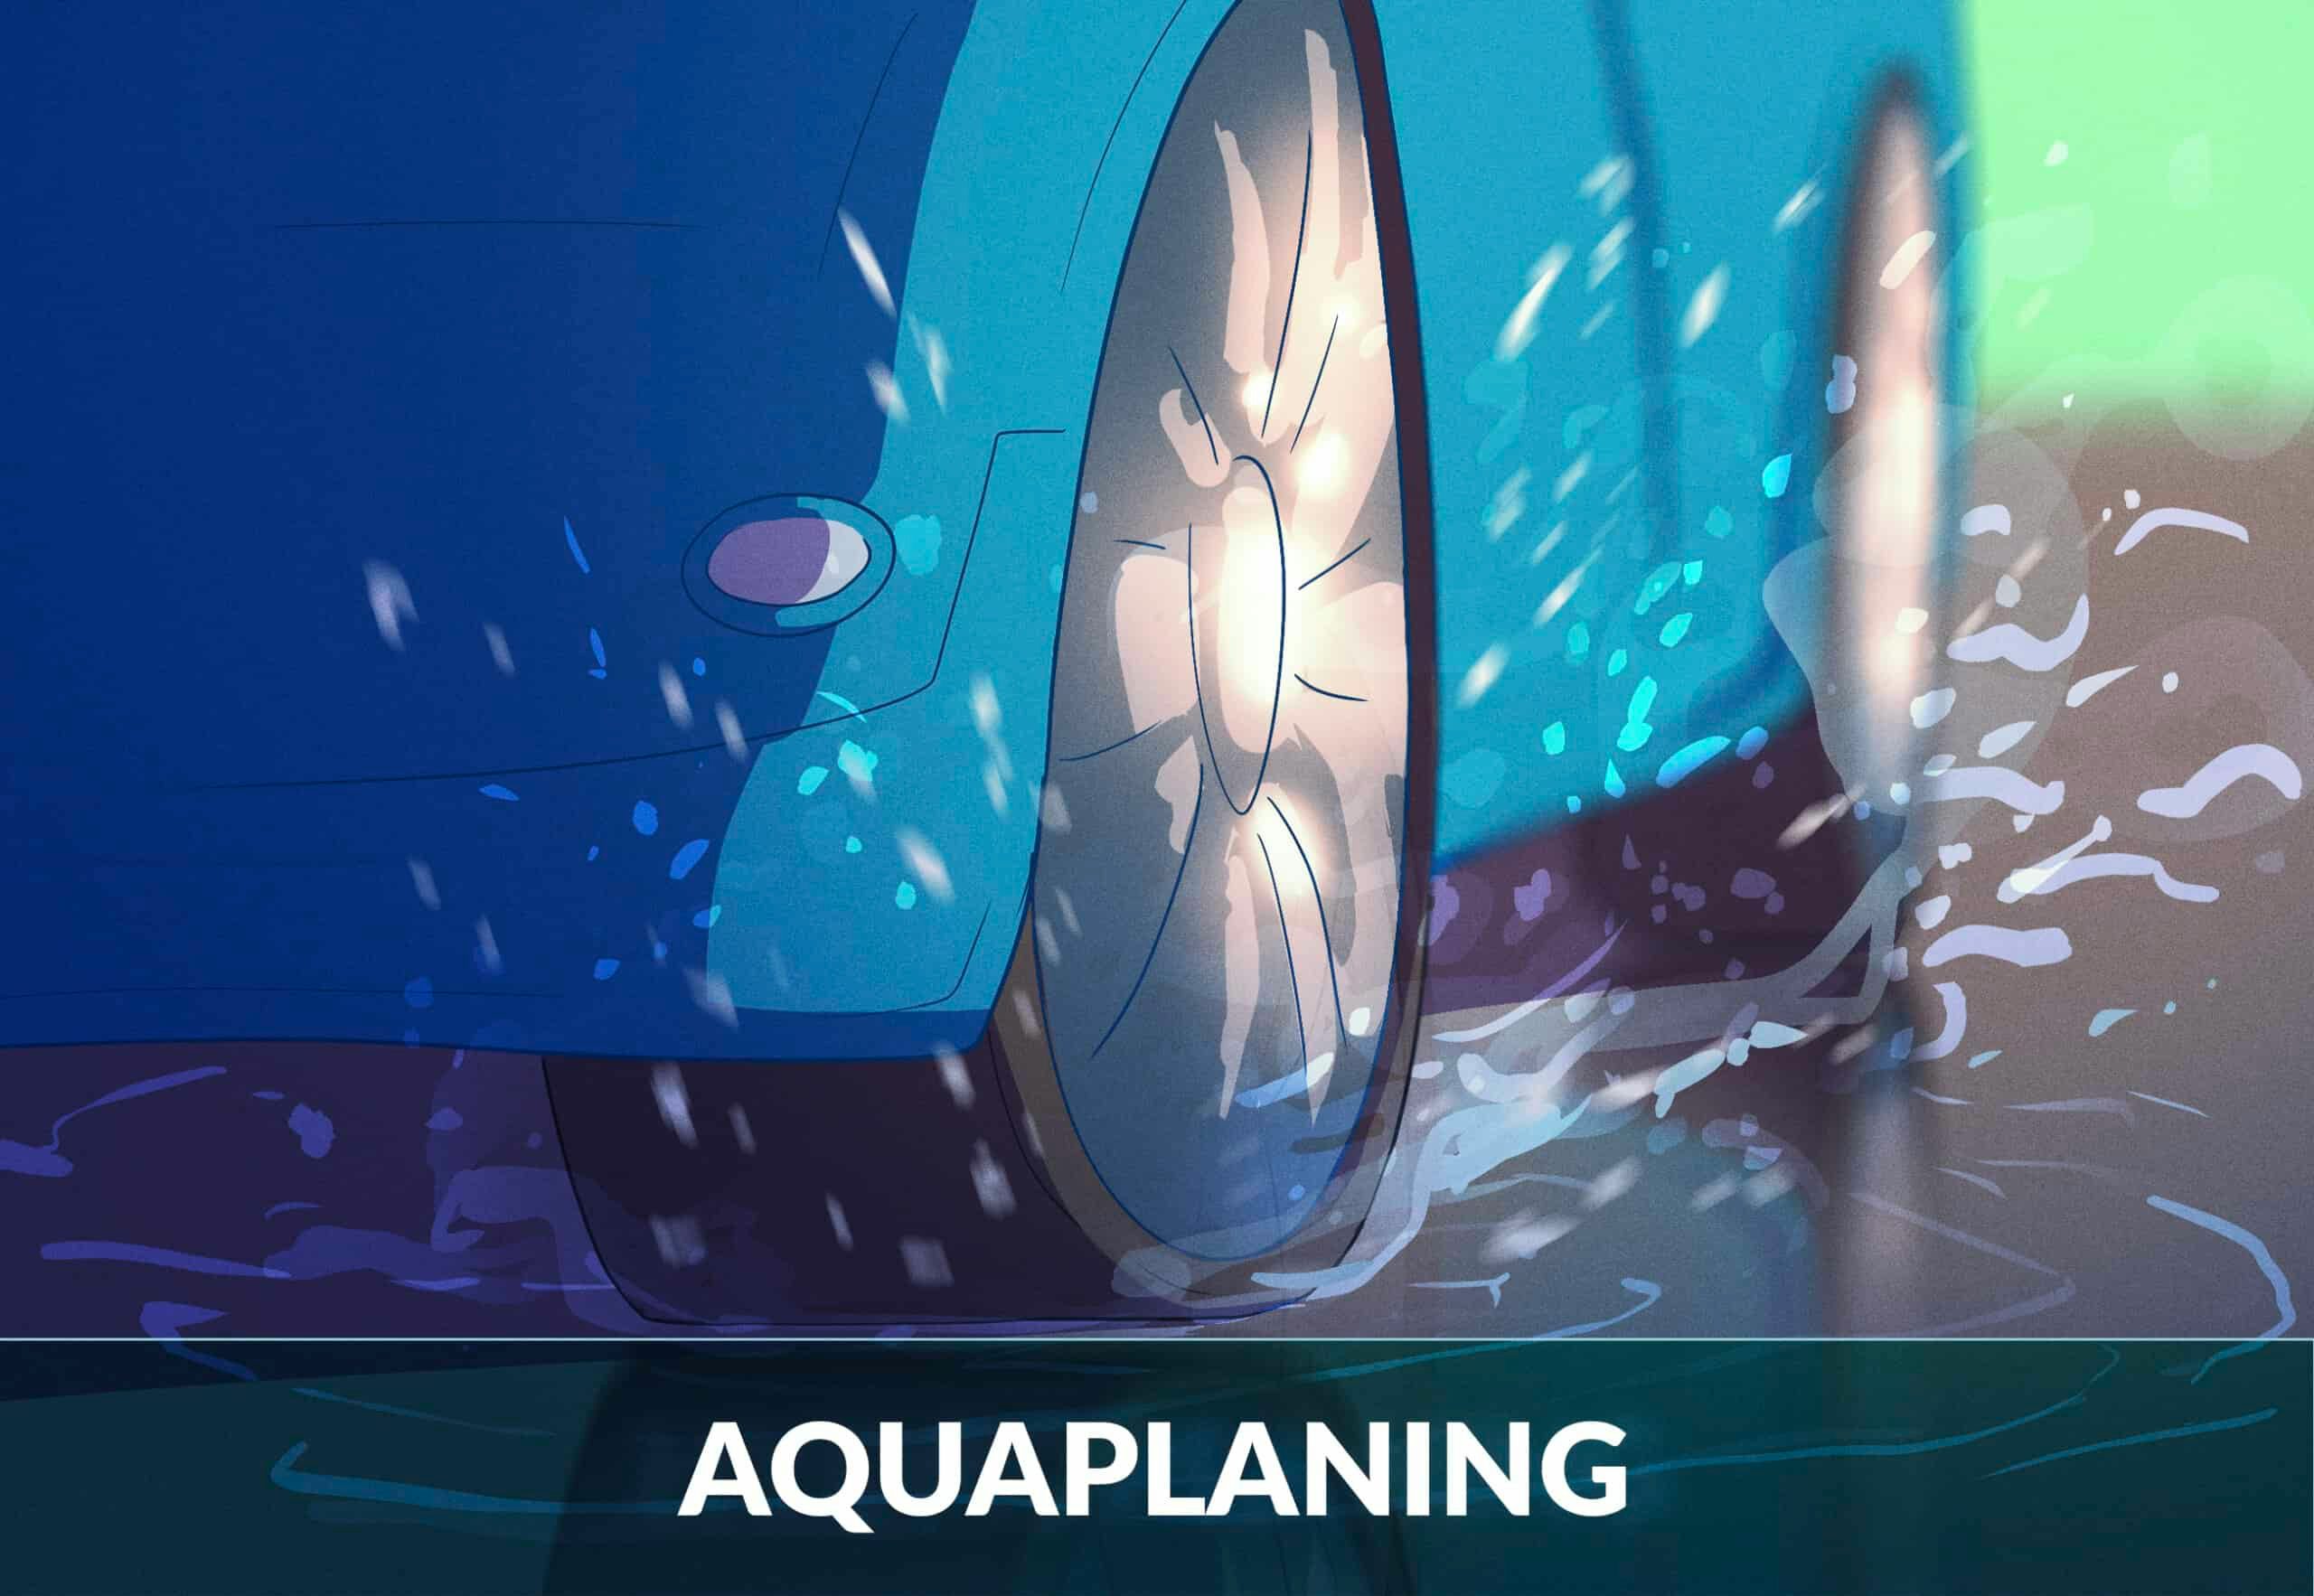 Aquaplaning